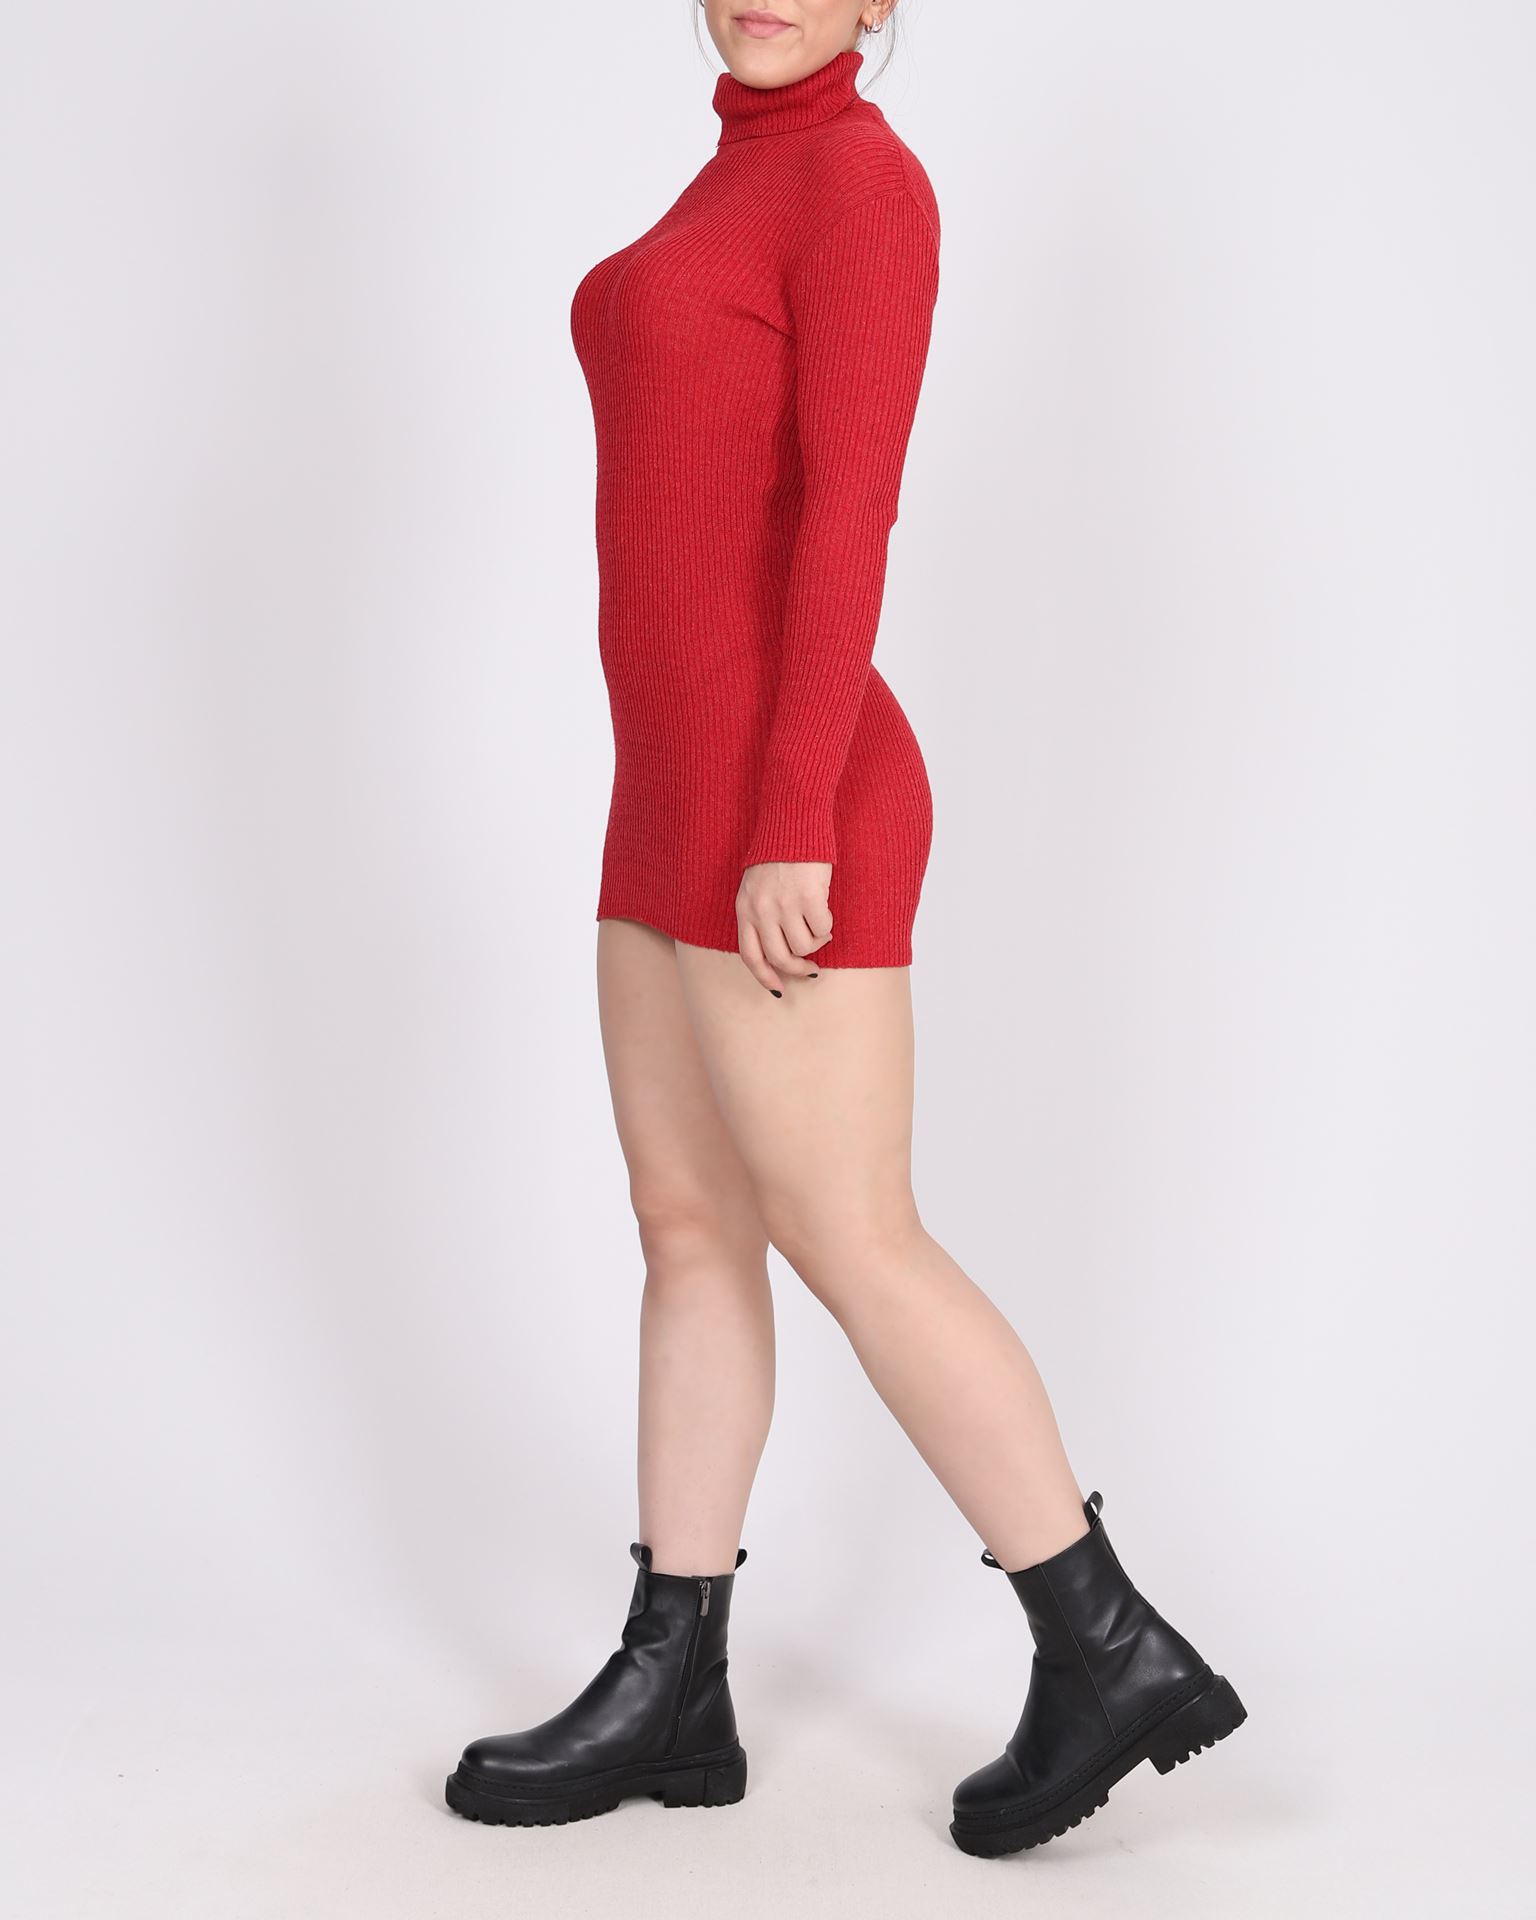 Kırmızı Triko Tunik Elbise TNK029